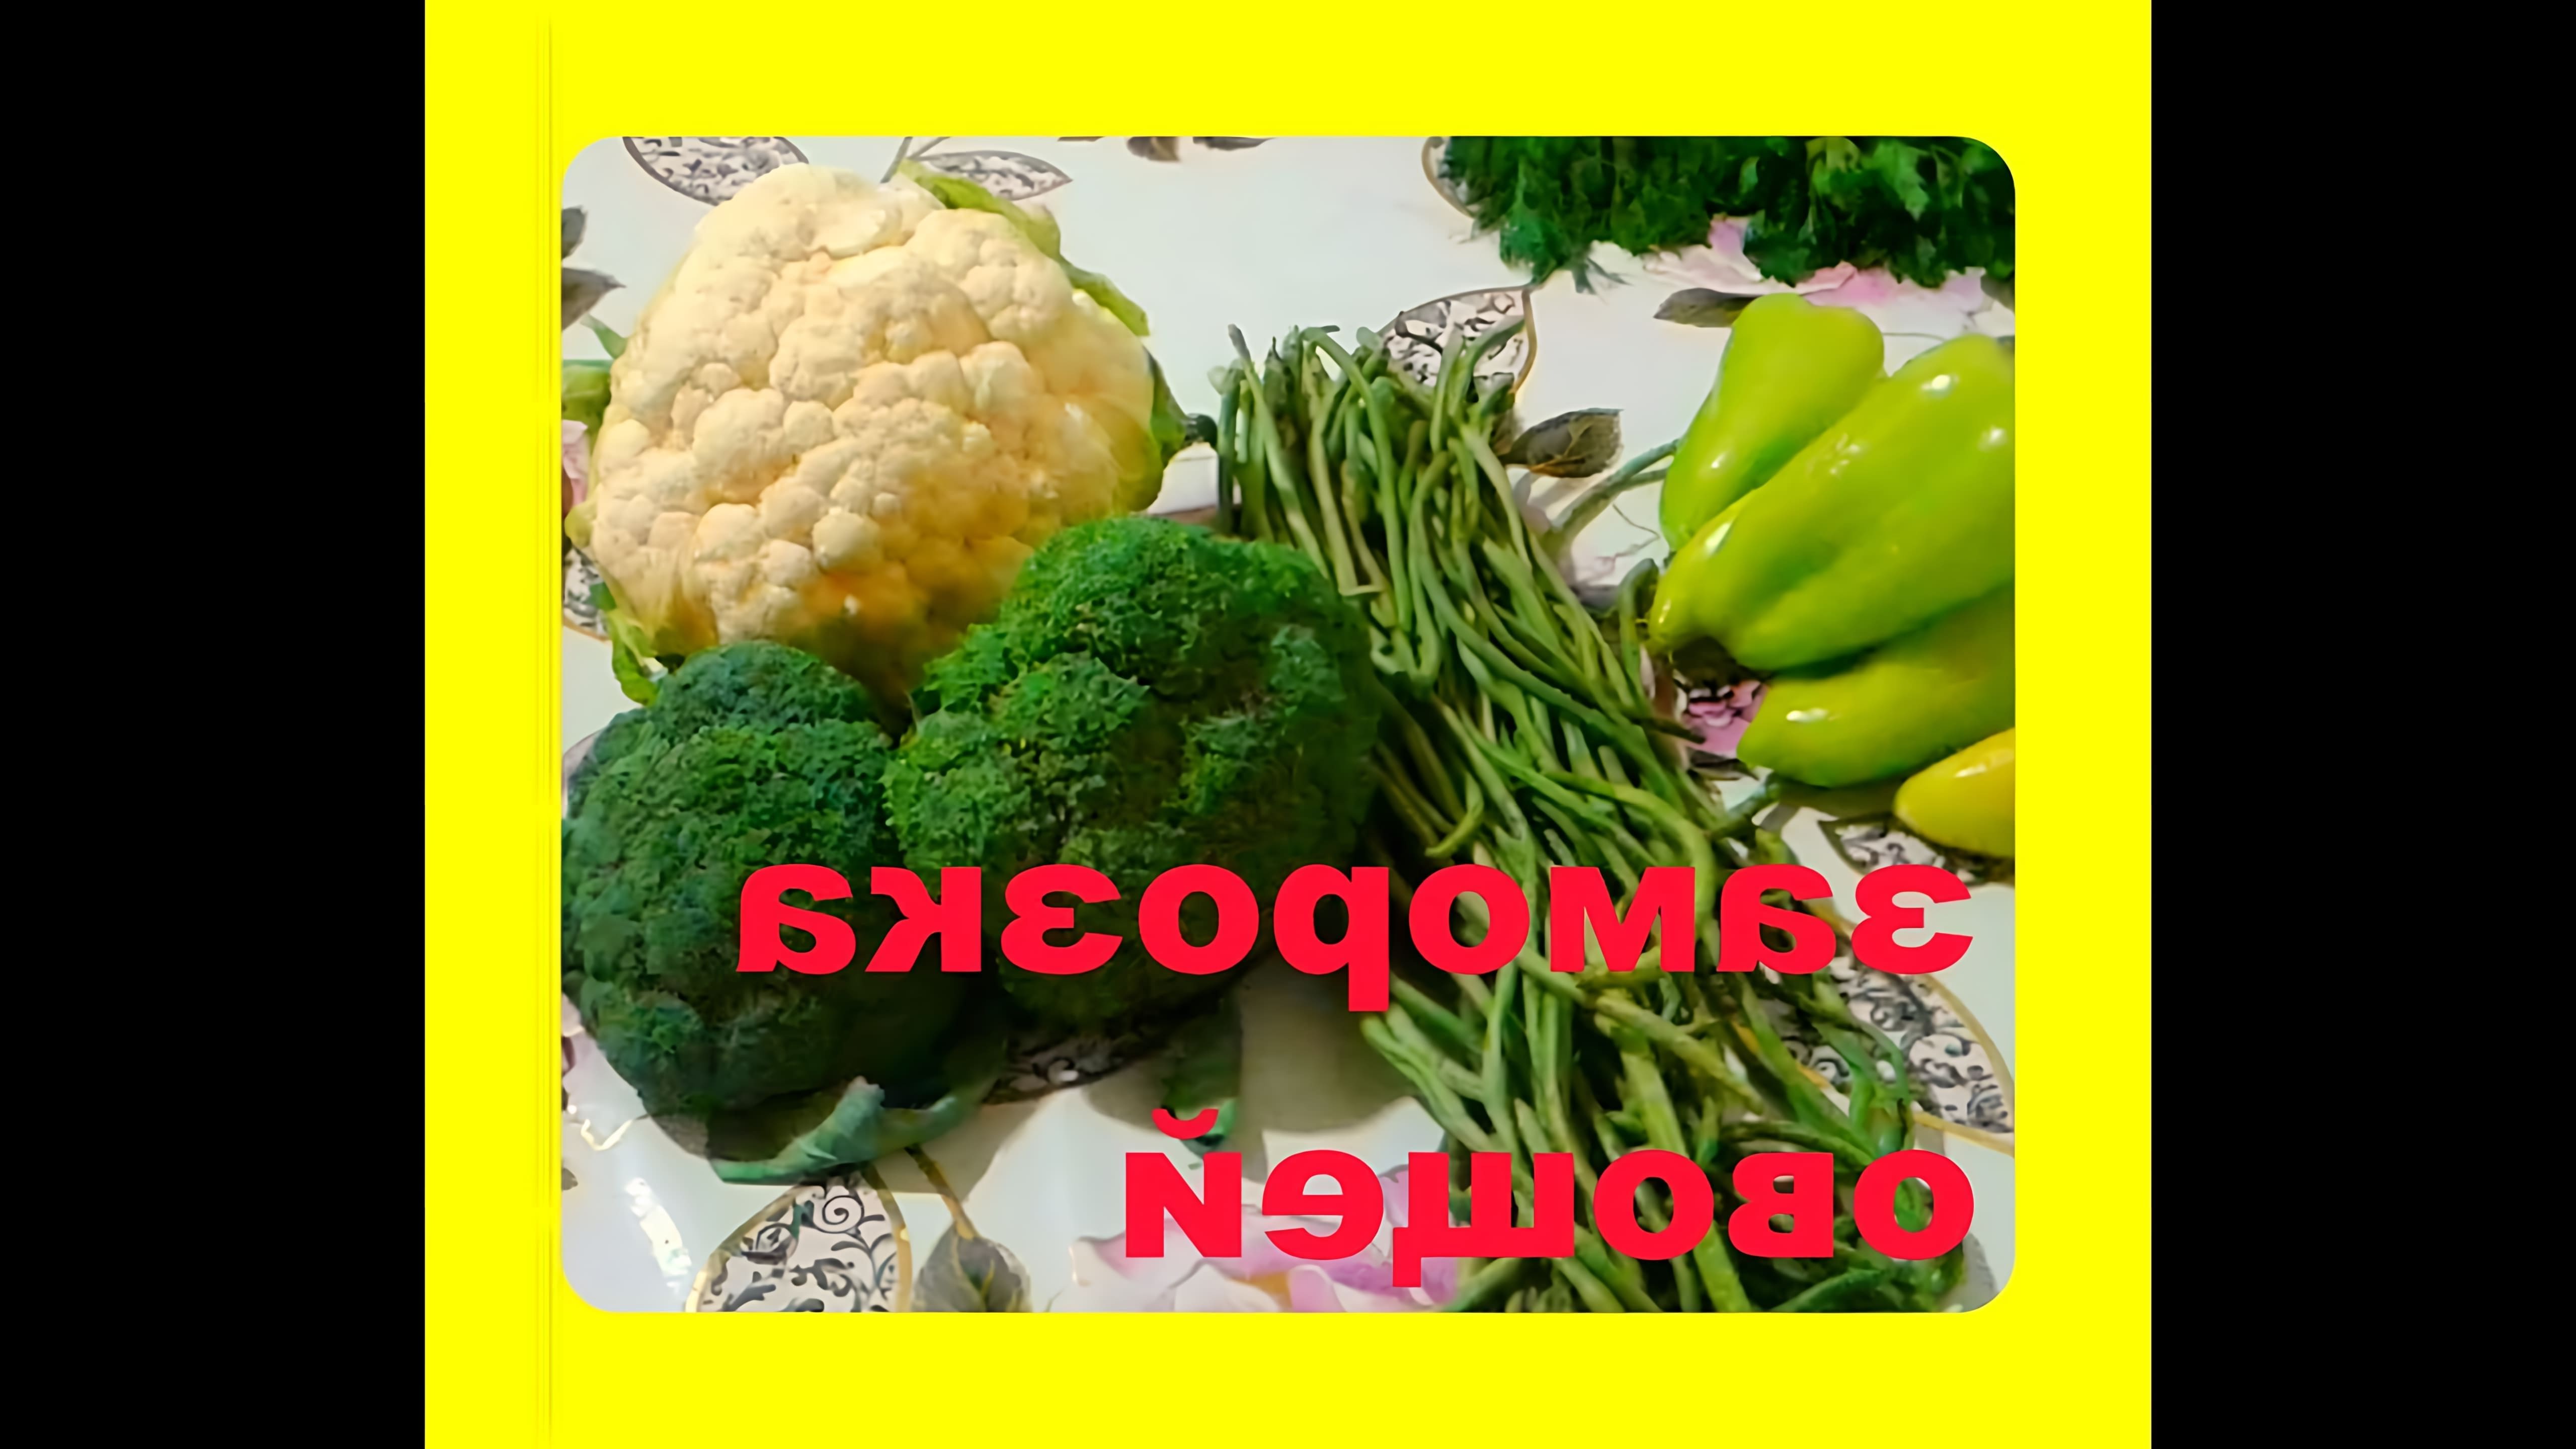 В этом видео демонстрируется процесс заморозки брокколи, цветной капусты, стручковой фасоли и перца